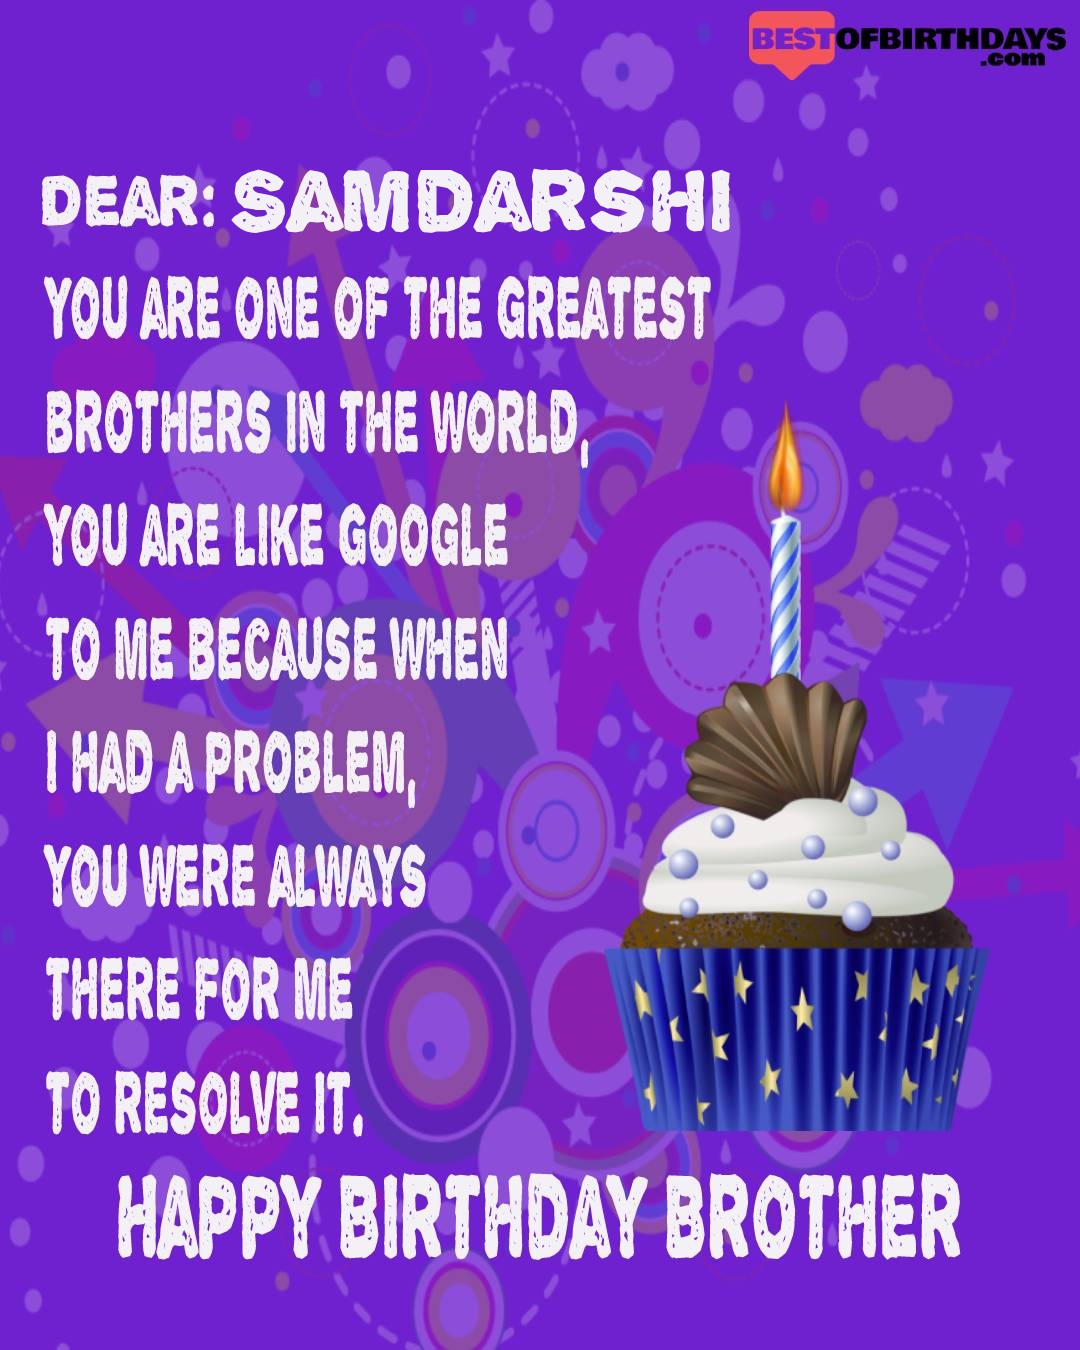 Happy birthday samdarshi bhai brother bro